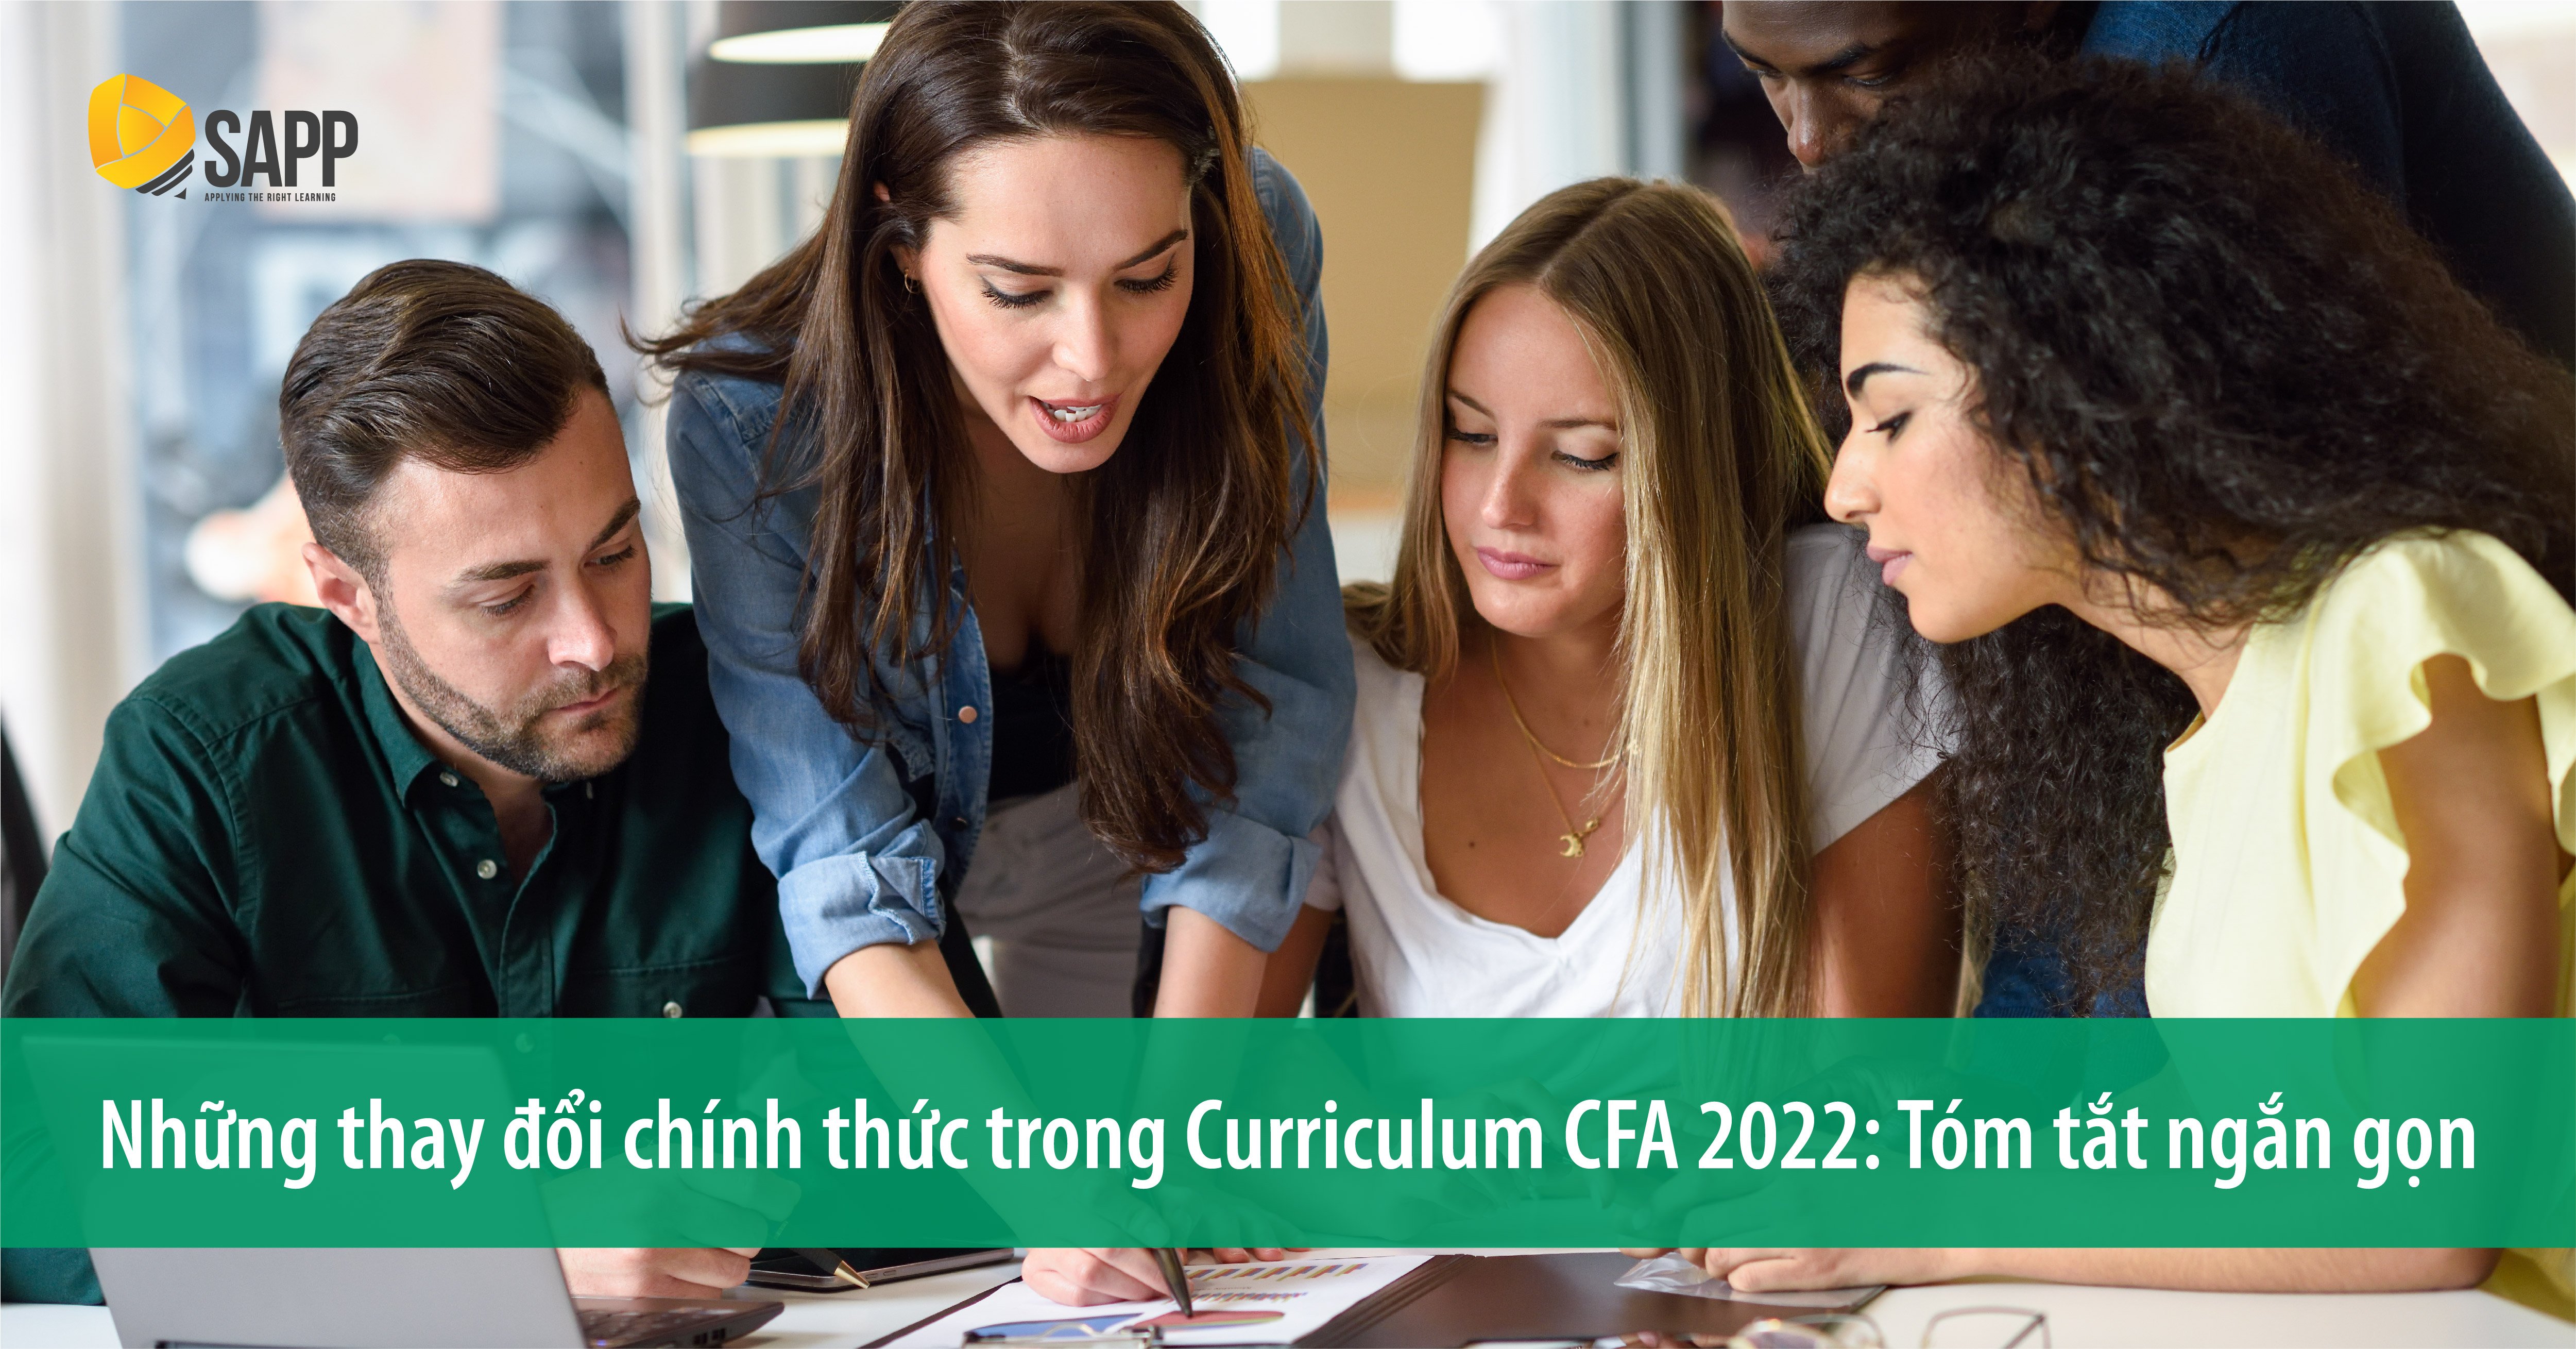 CFA Curriculum changes 2022